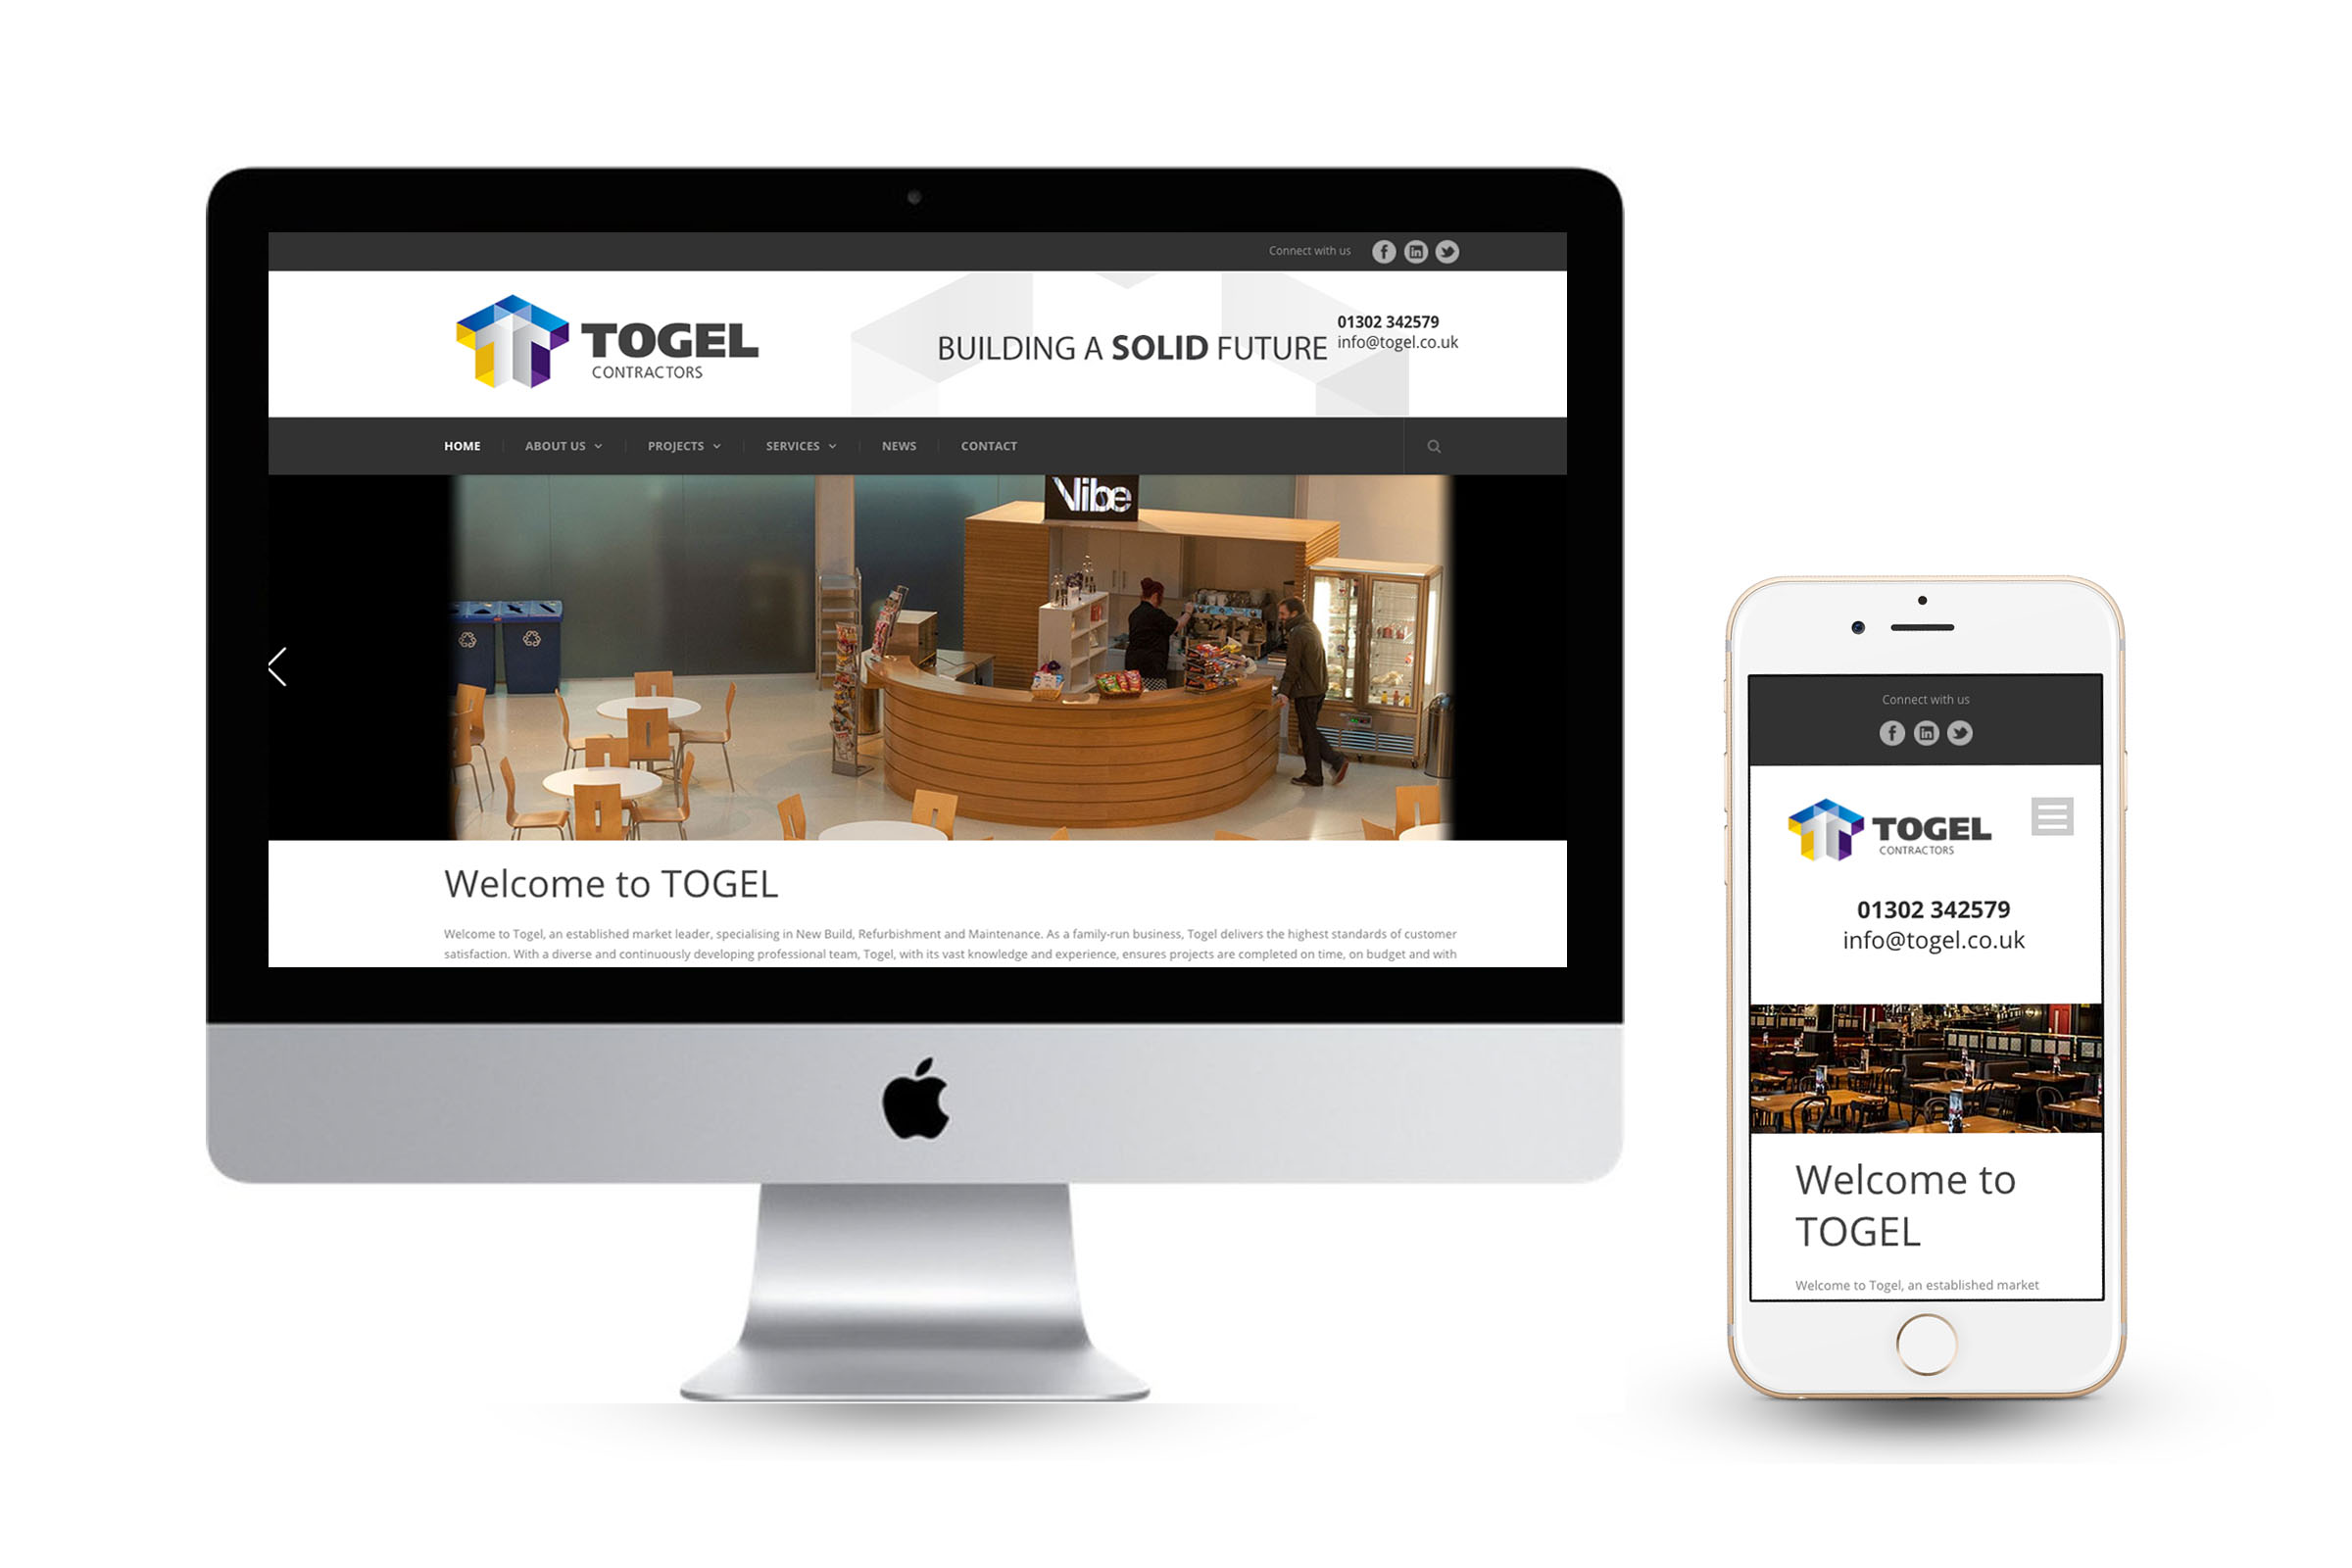 Togel - Website Design Display Desktop & Mobile